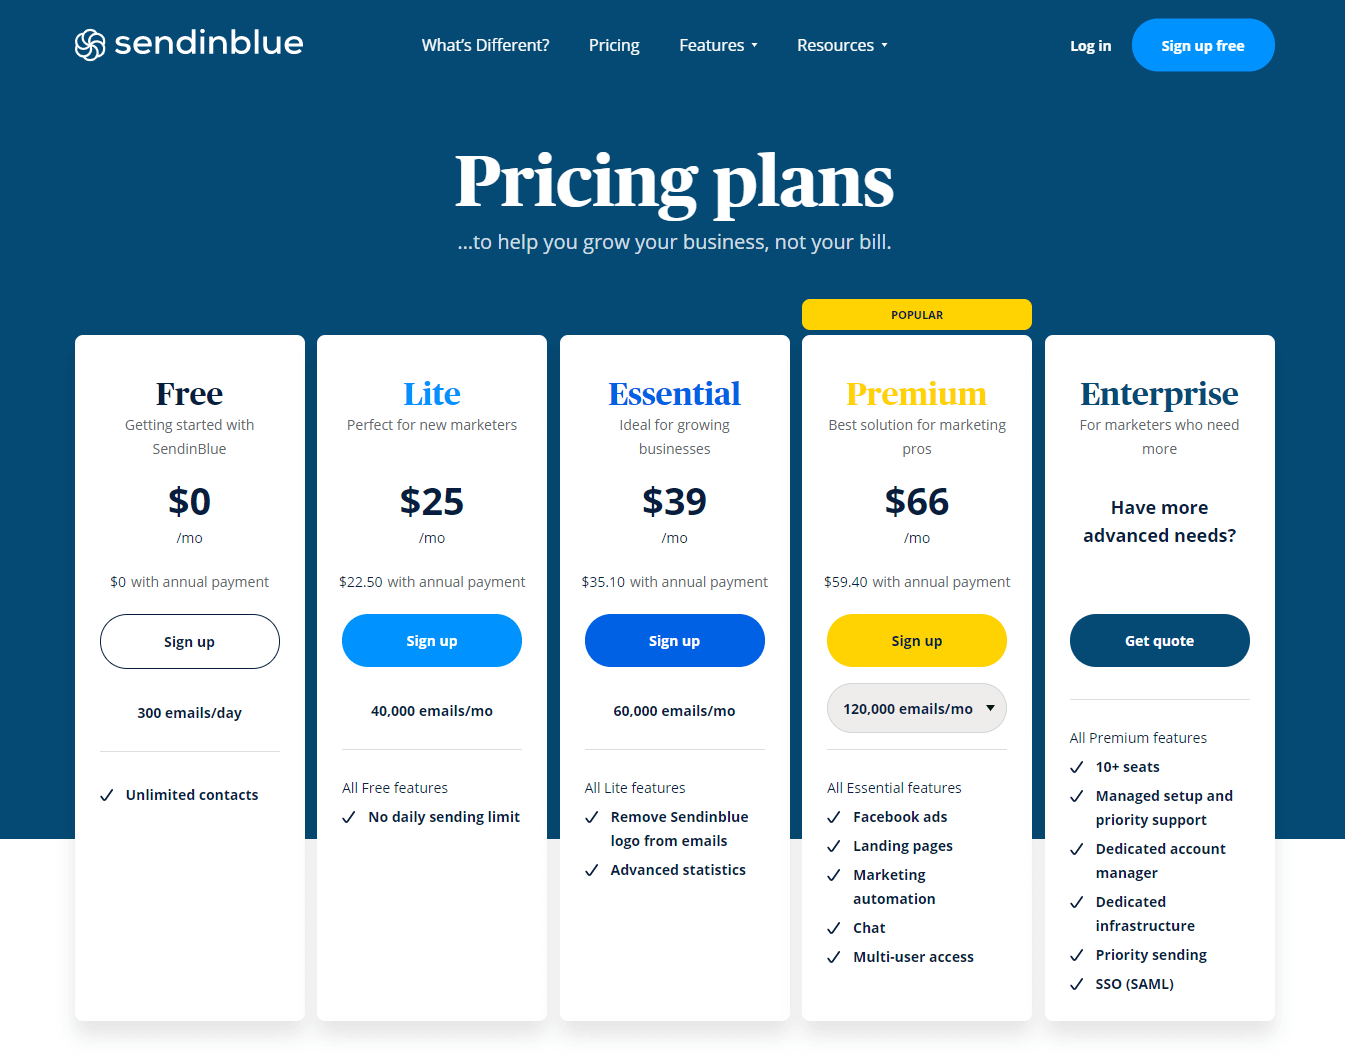 sendinblue pricing jan 2020